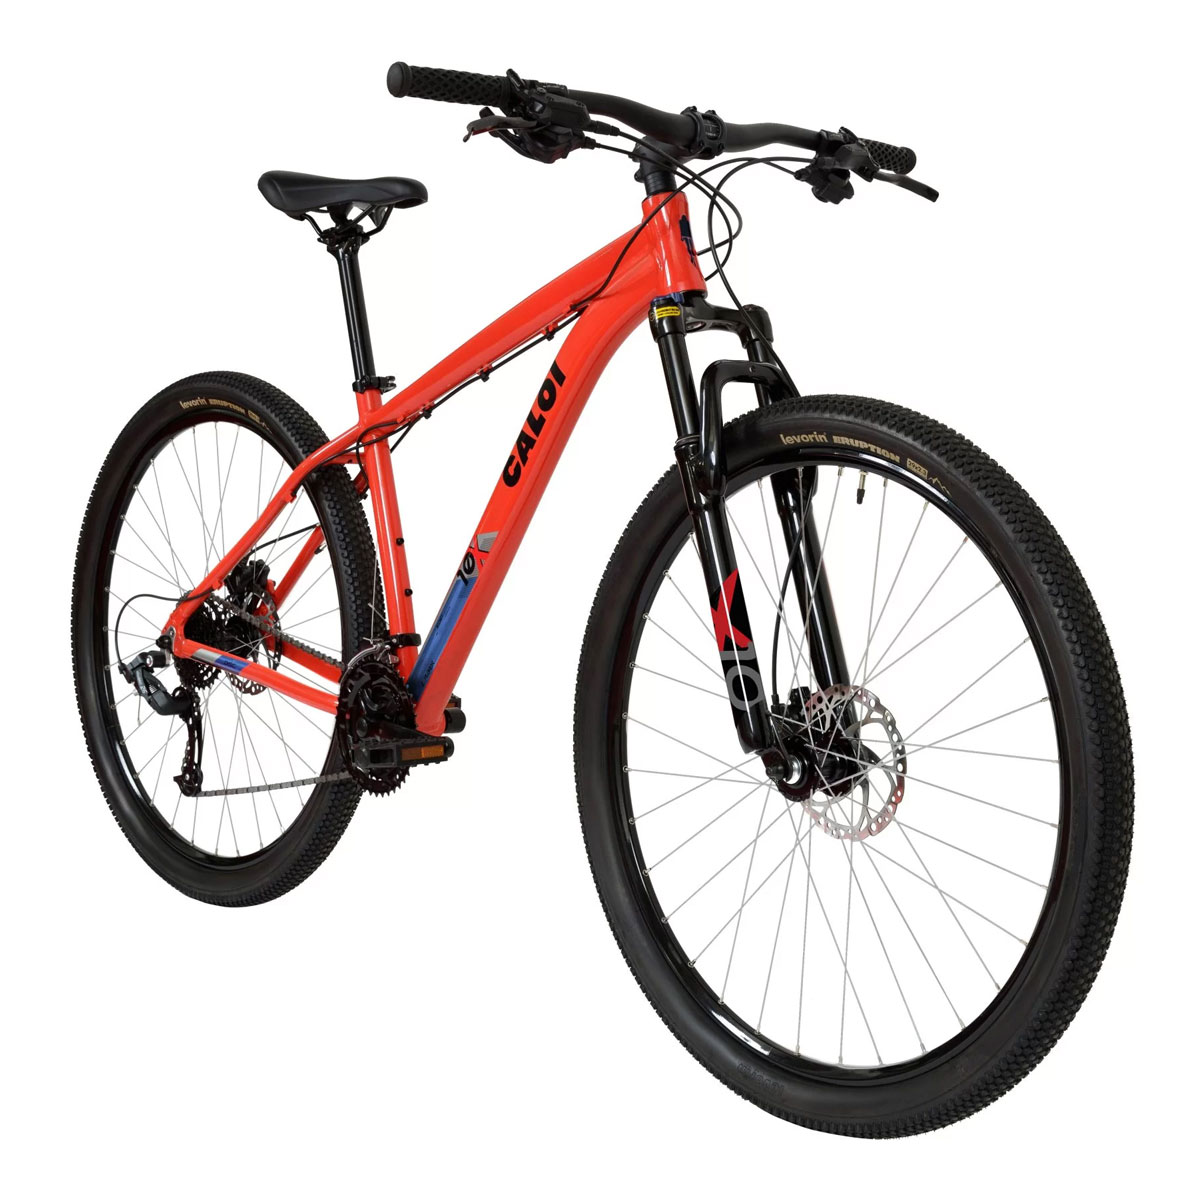 Bicicleta Caloi Explorer 10 Tam G Vermelha R29 V24 A22